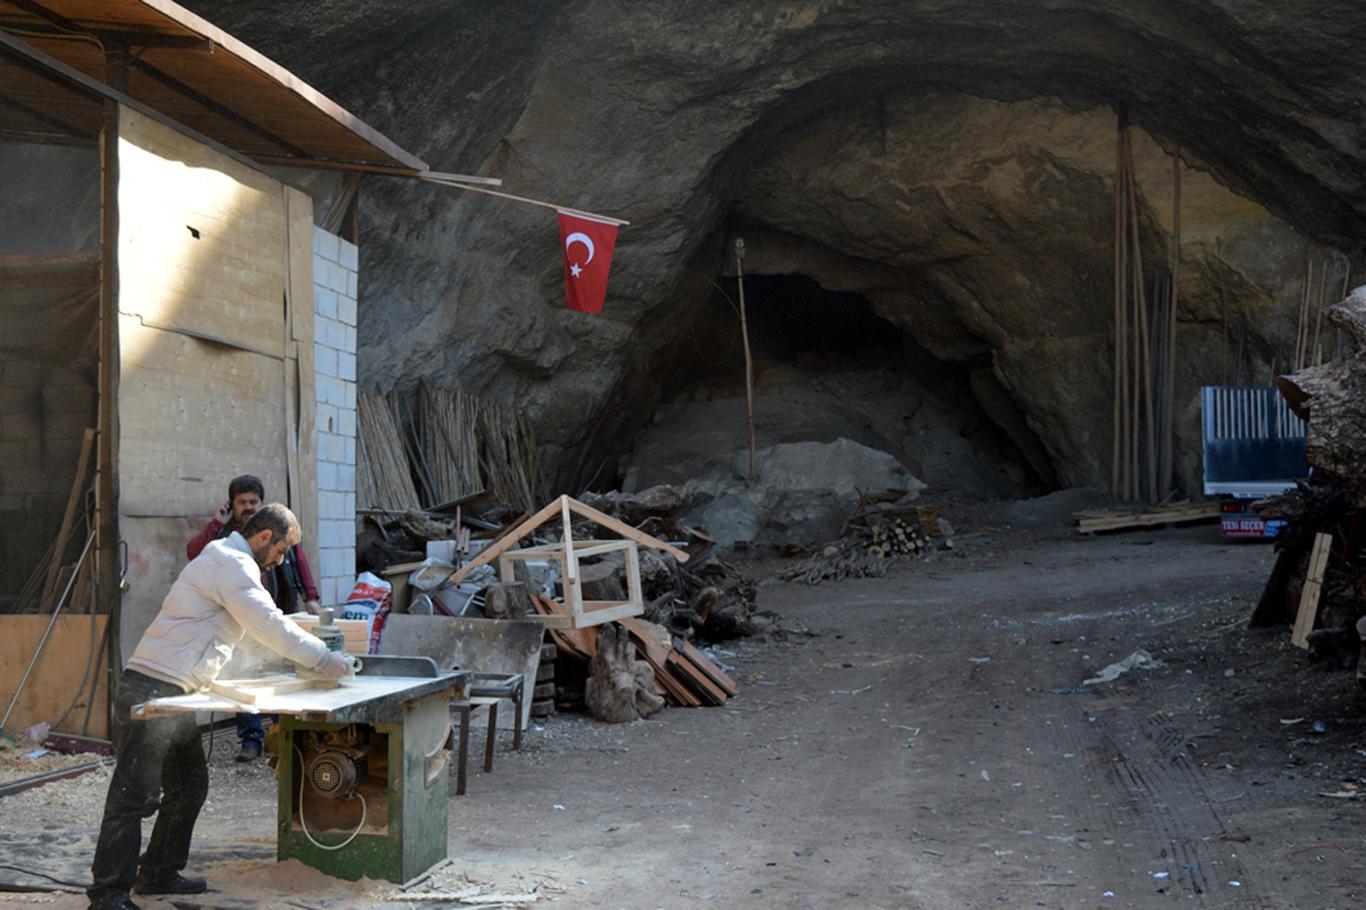 Gaziantepli keresteciler yeni bir siteye taşınmak istiyor